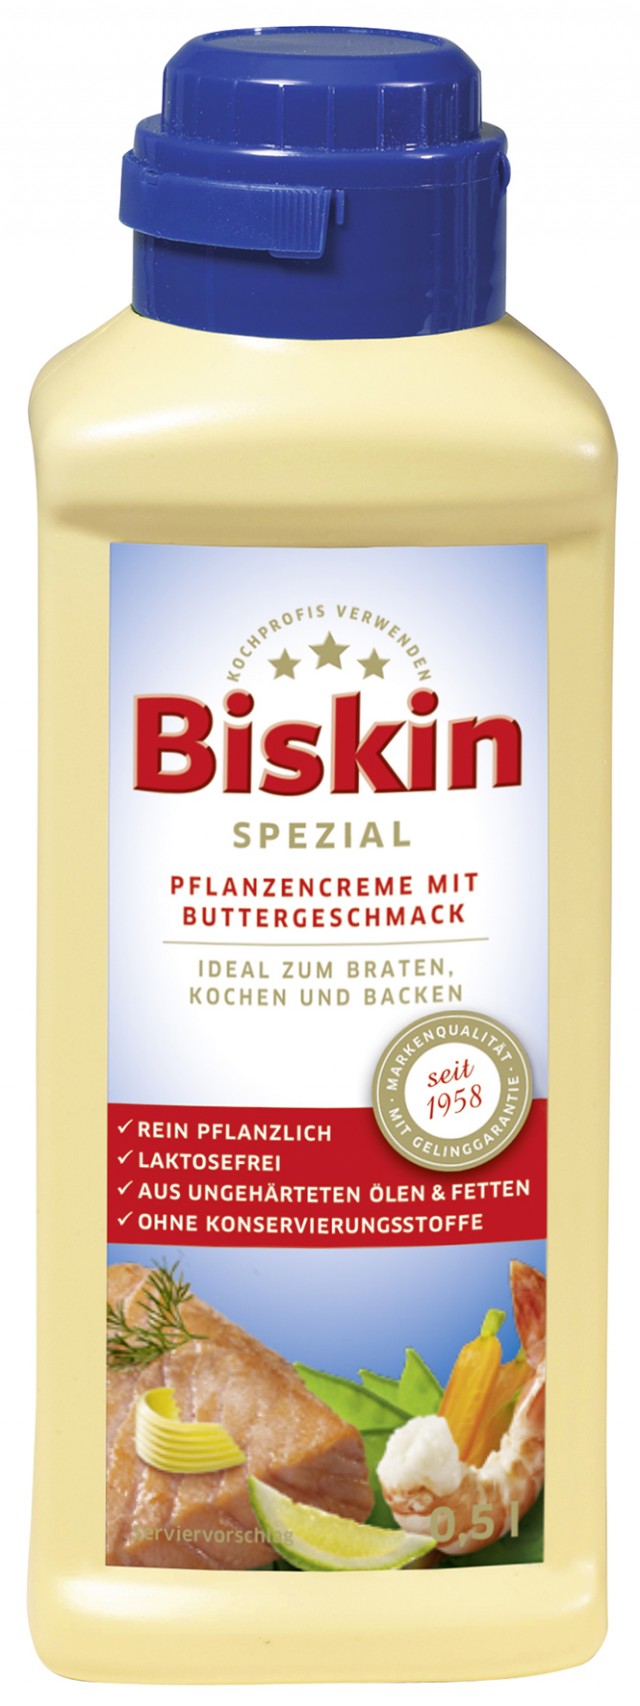 Biskin®Spezial Pflanzencreme